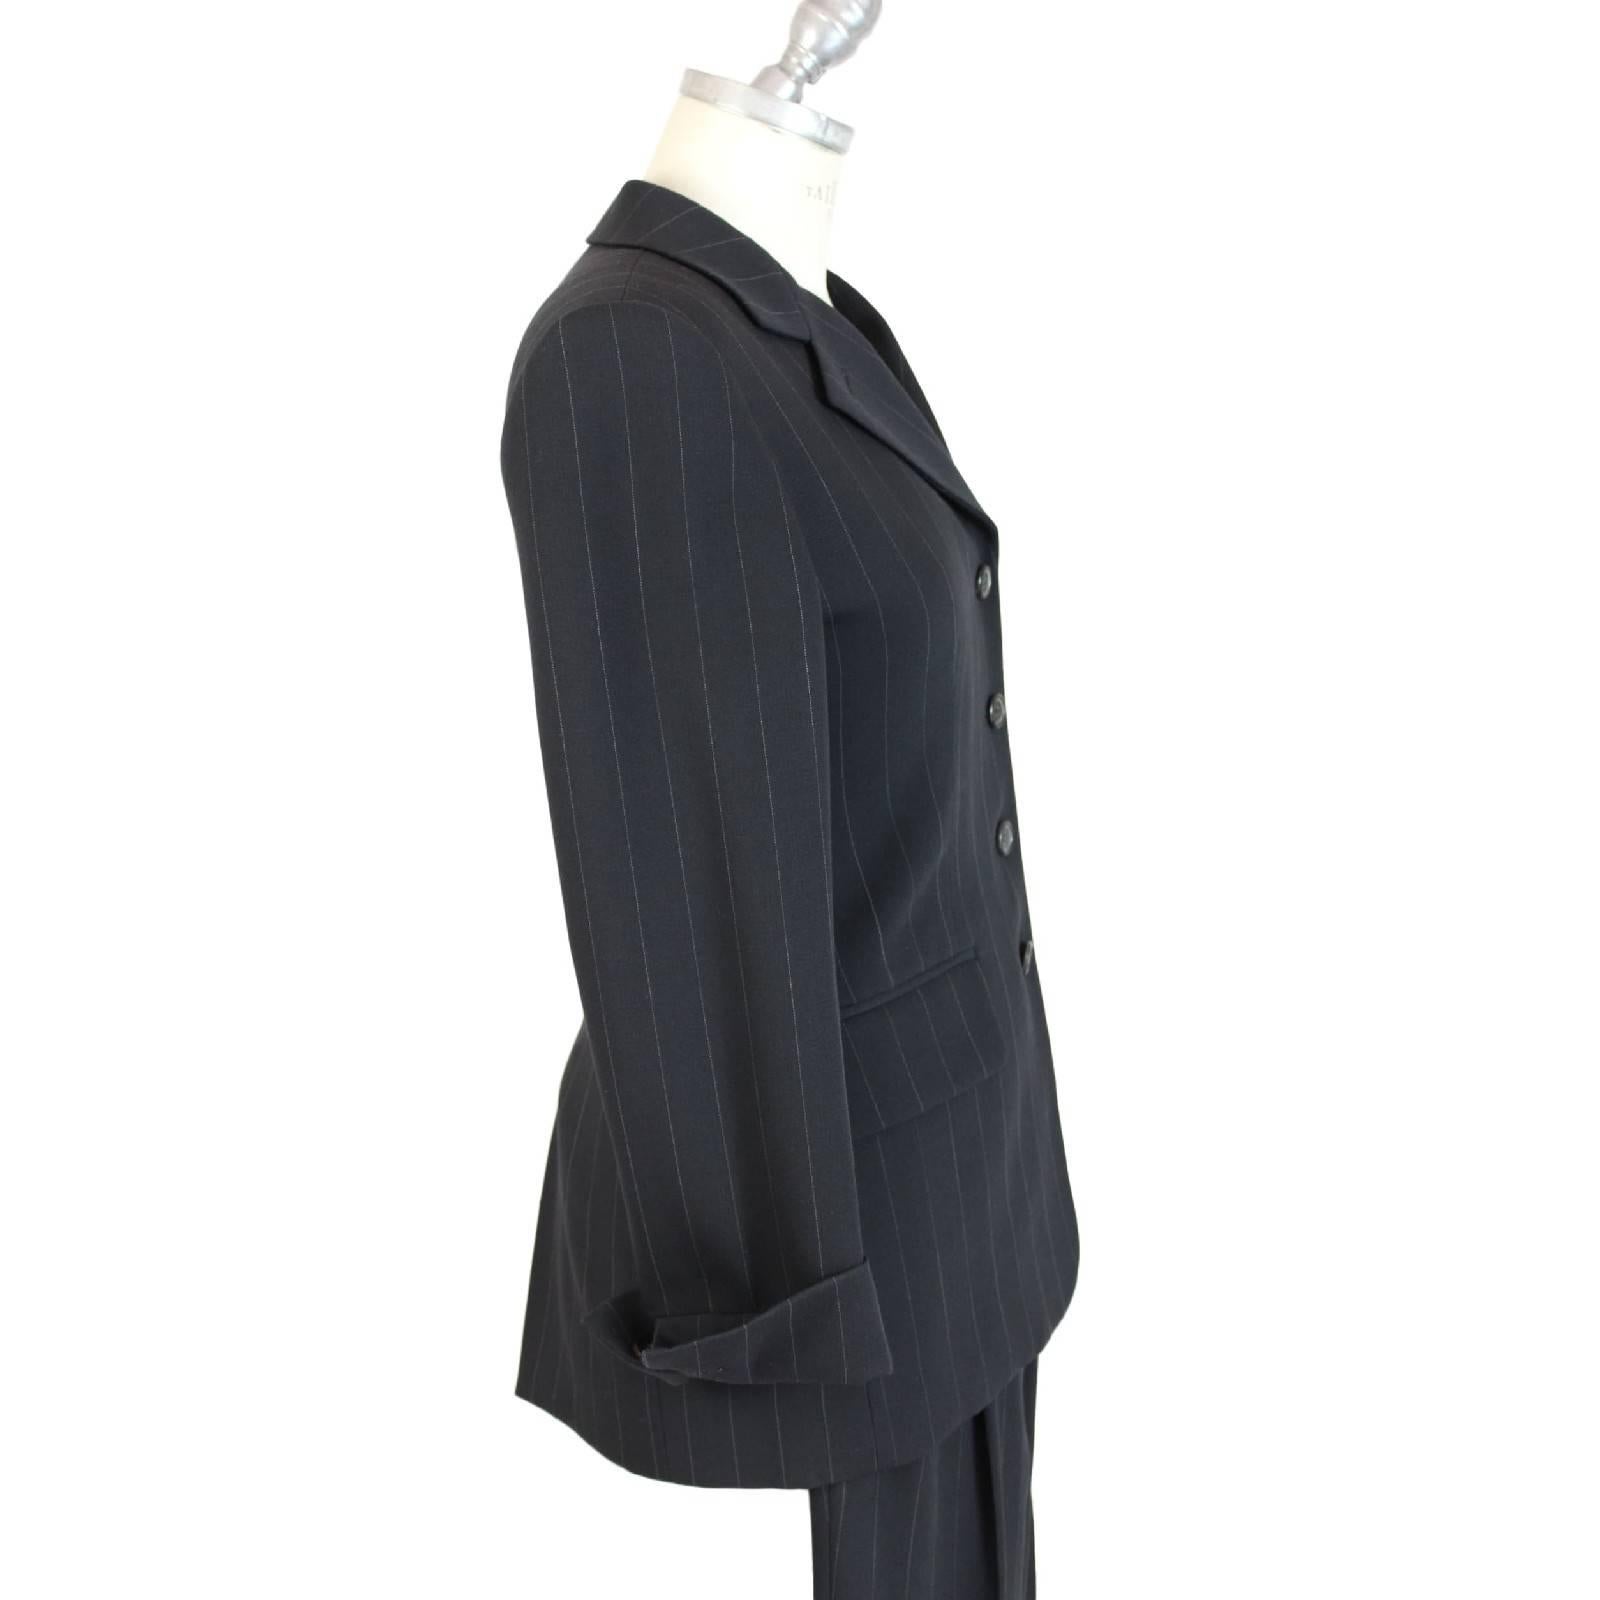 Suit jacket and pants gray pinstripe wool Prada woman, slim fit jacket and cigarette pants.

Size: 40 (IT)

Measures:

Shoulders: 40 cm
Armpit to armpit: 45 cm
Total lenght: 70 cm
Sleeves : 57 cm

Measures pants:
Waist: 32 cm
Length: 100 cm
Hem: 19